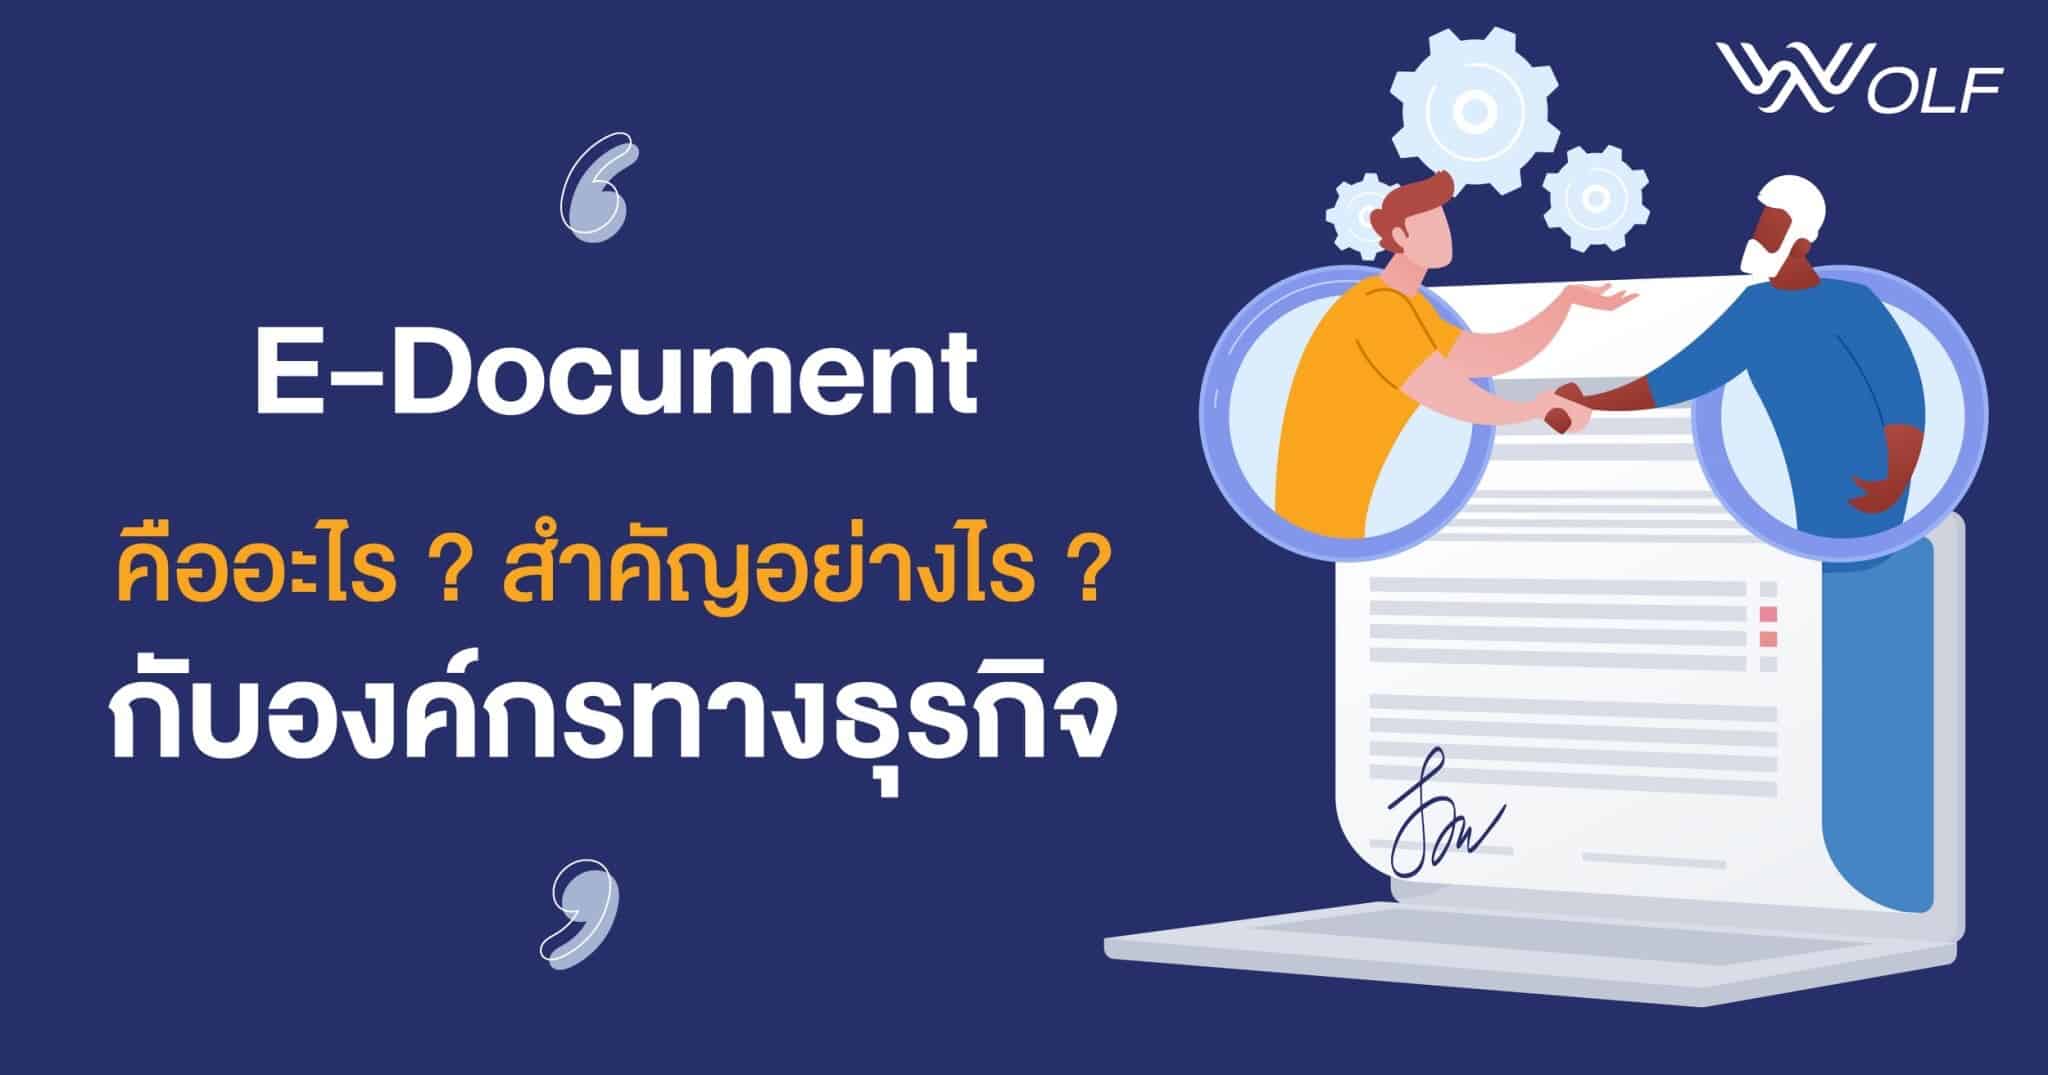 E-Document คืออะไร สำคัญอย่างไรกับองค์กรทางธุรกิจ